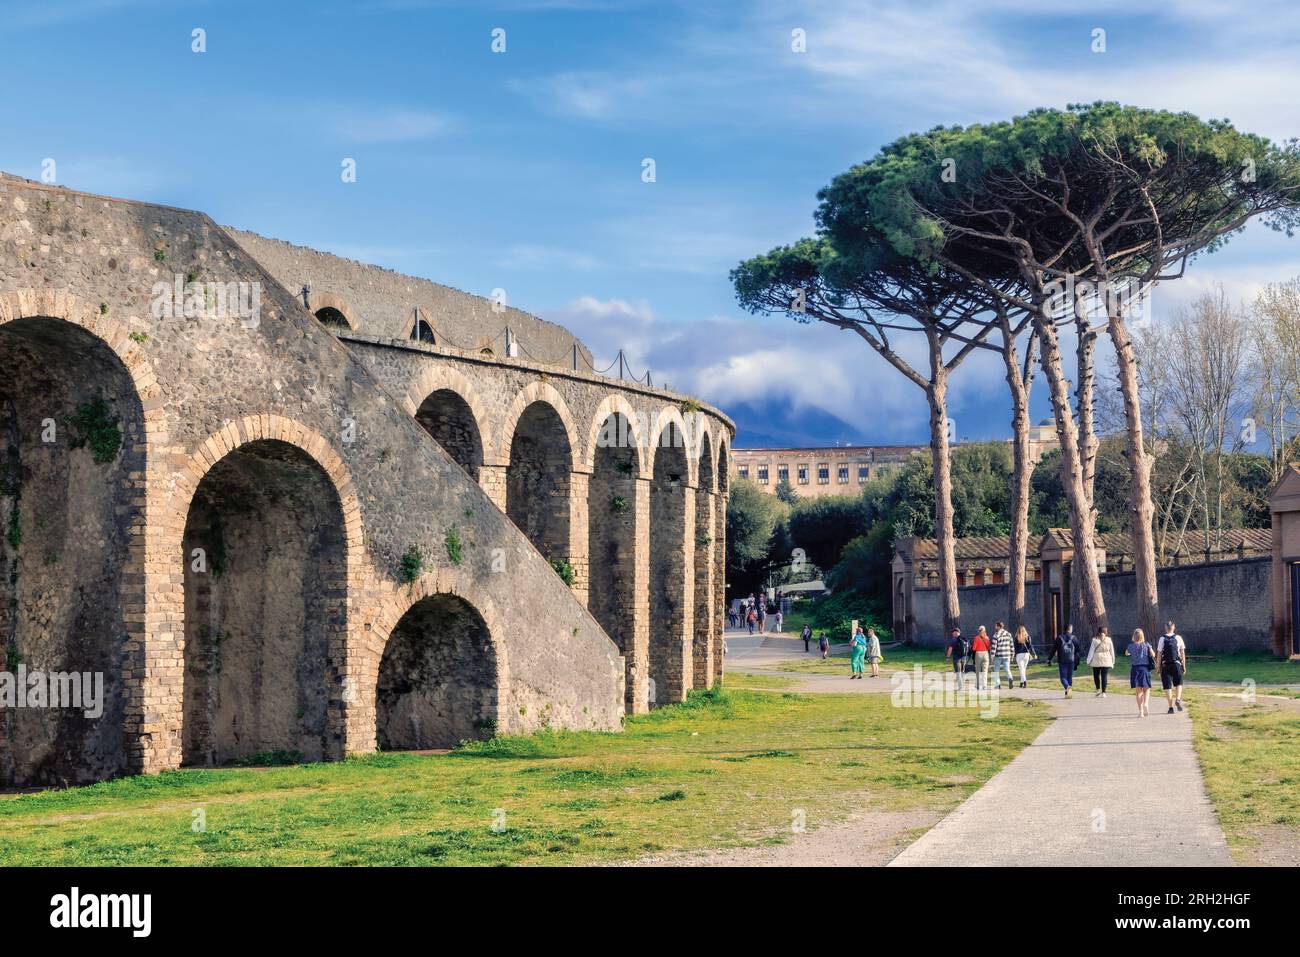 Sito archeologico di Pompei, Campania, Italia. L'anfiteatro, risalente al 70 a.C. Pompei, Ercolano e Torre Annunziata sono collettivamente descrittivi Foto Stock